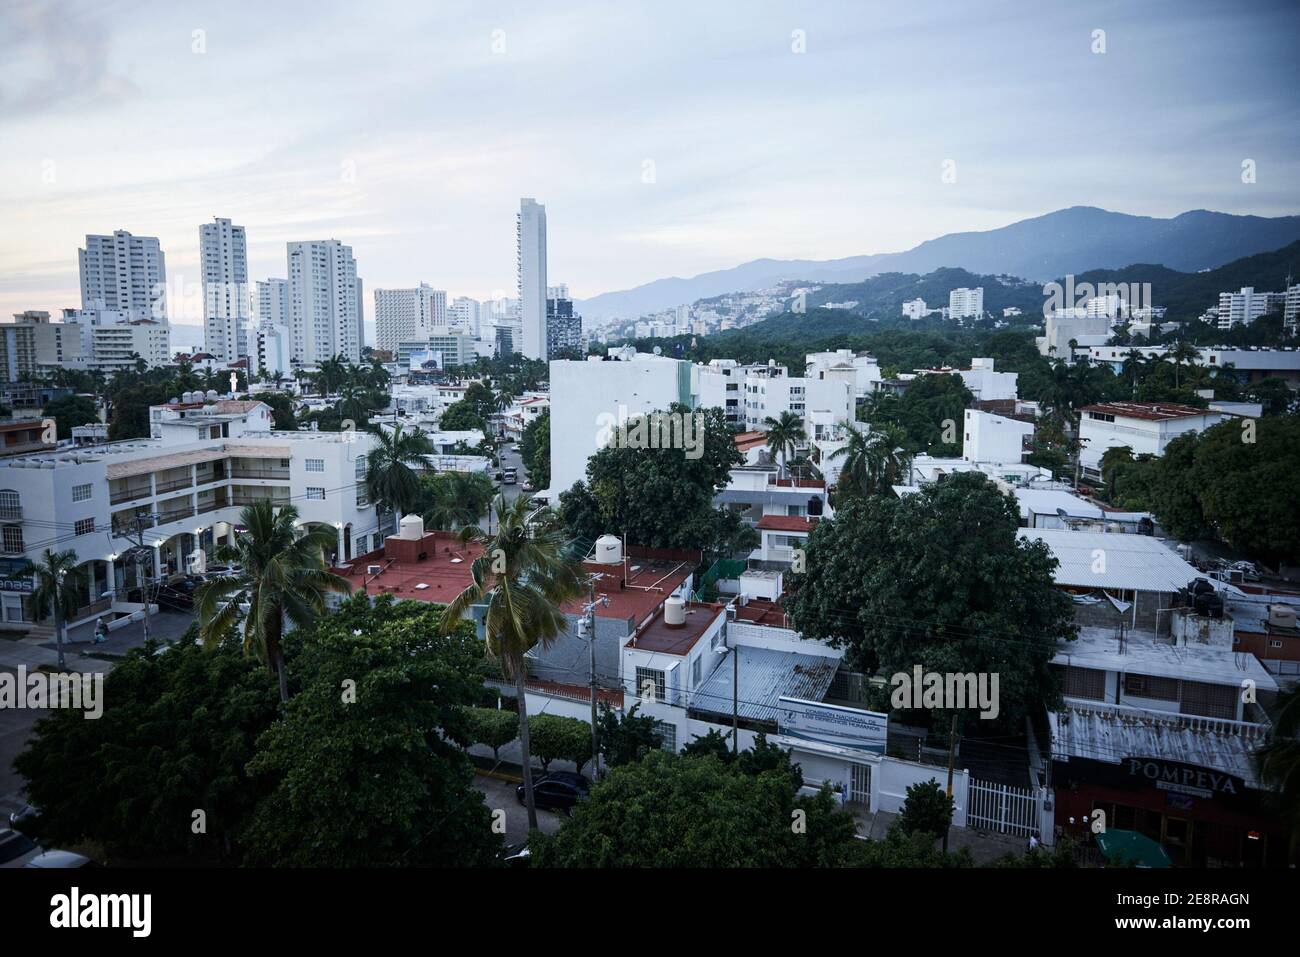 Il paesaggio e il paesaggio urbano della città di Acapulco, nel Guerrero stato del Messico. Foto Stock